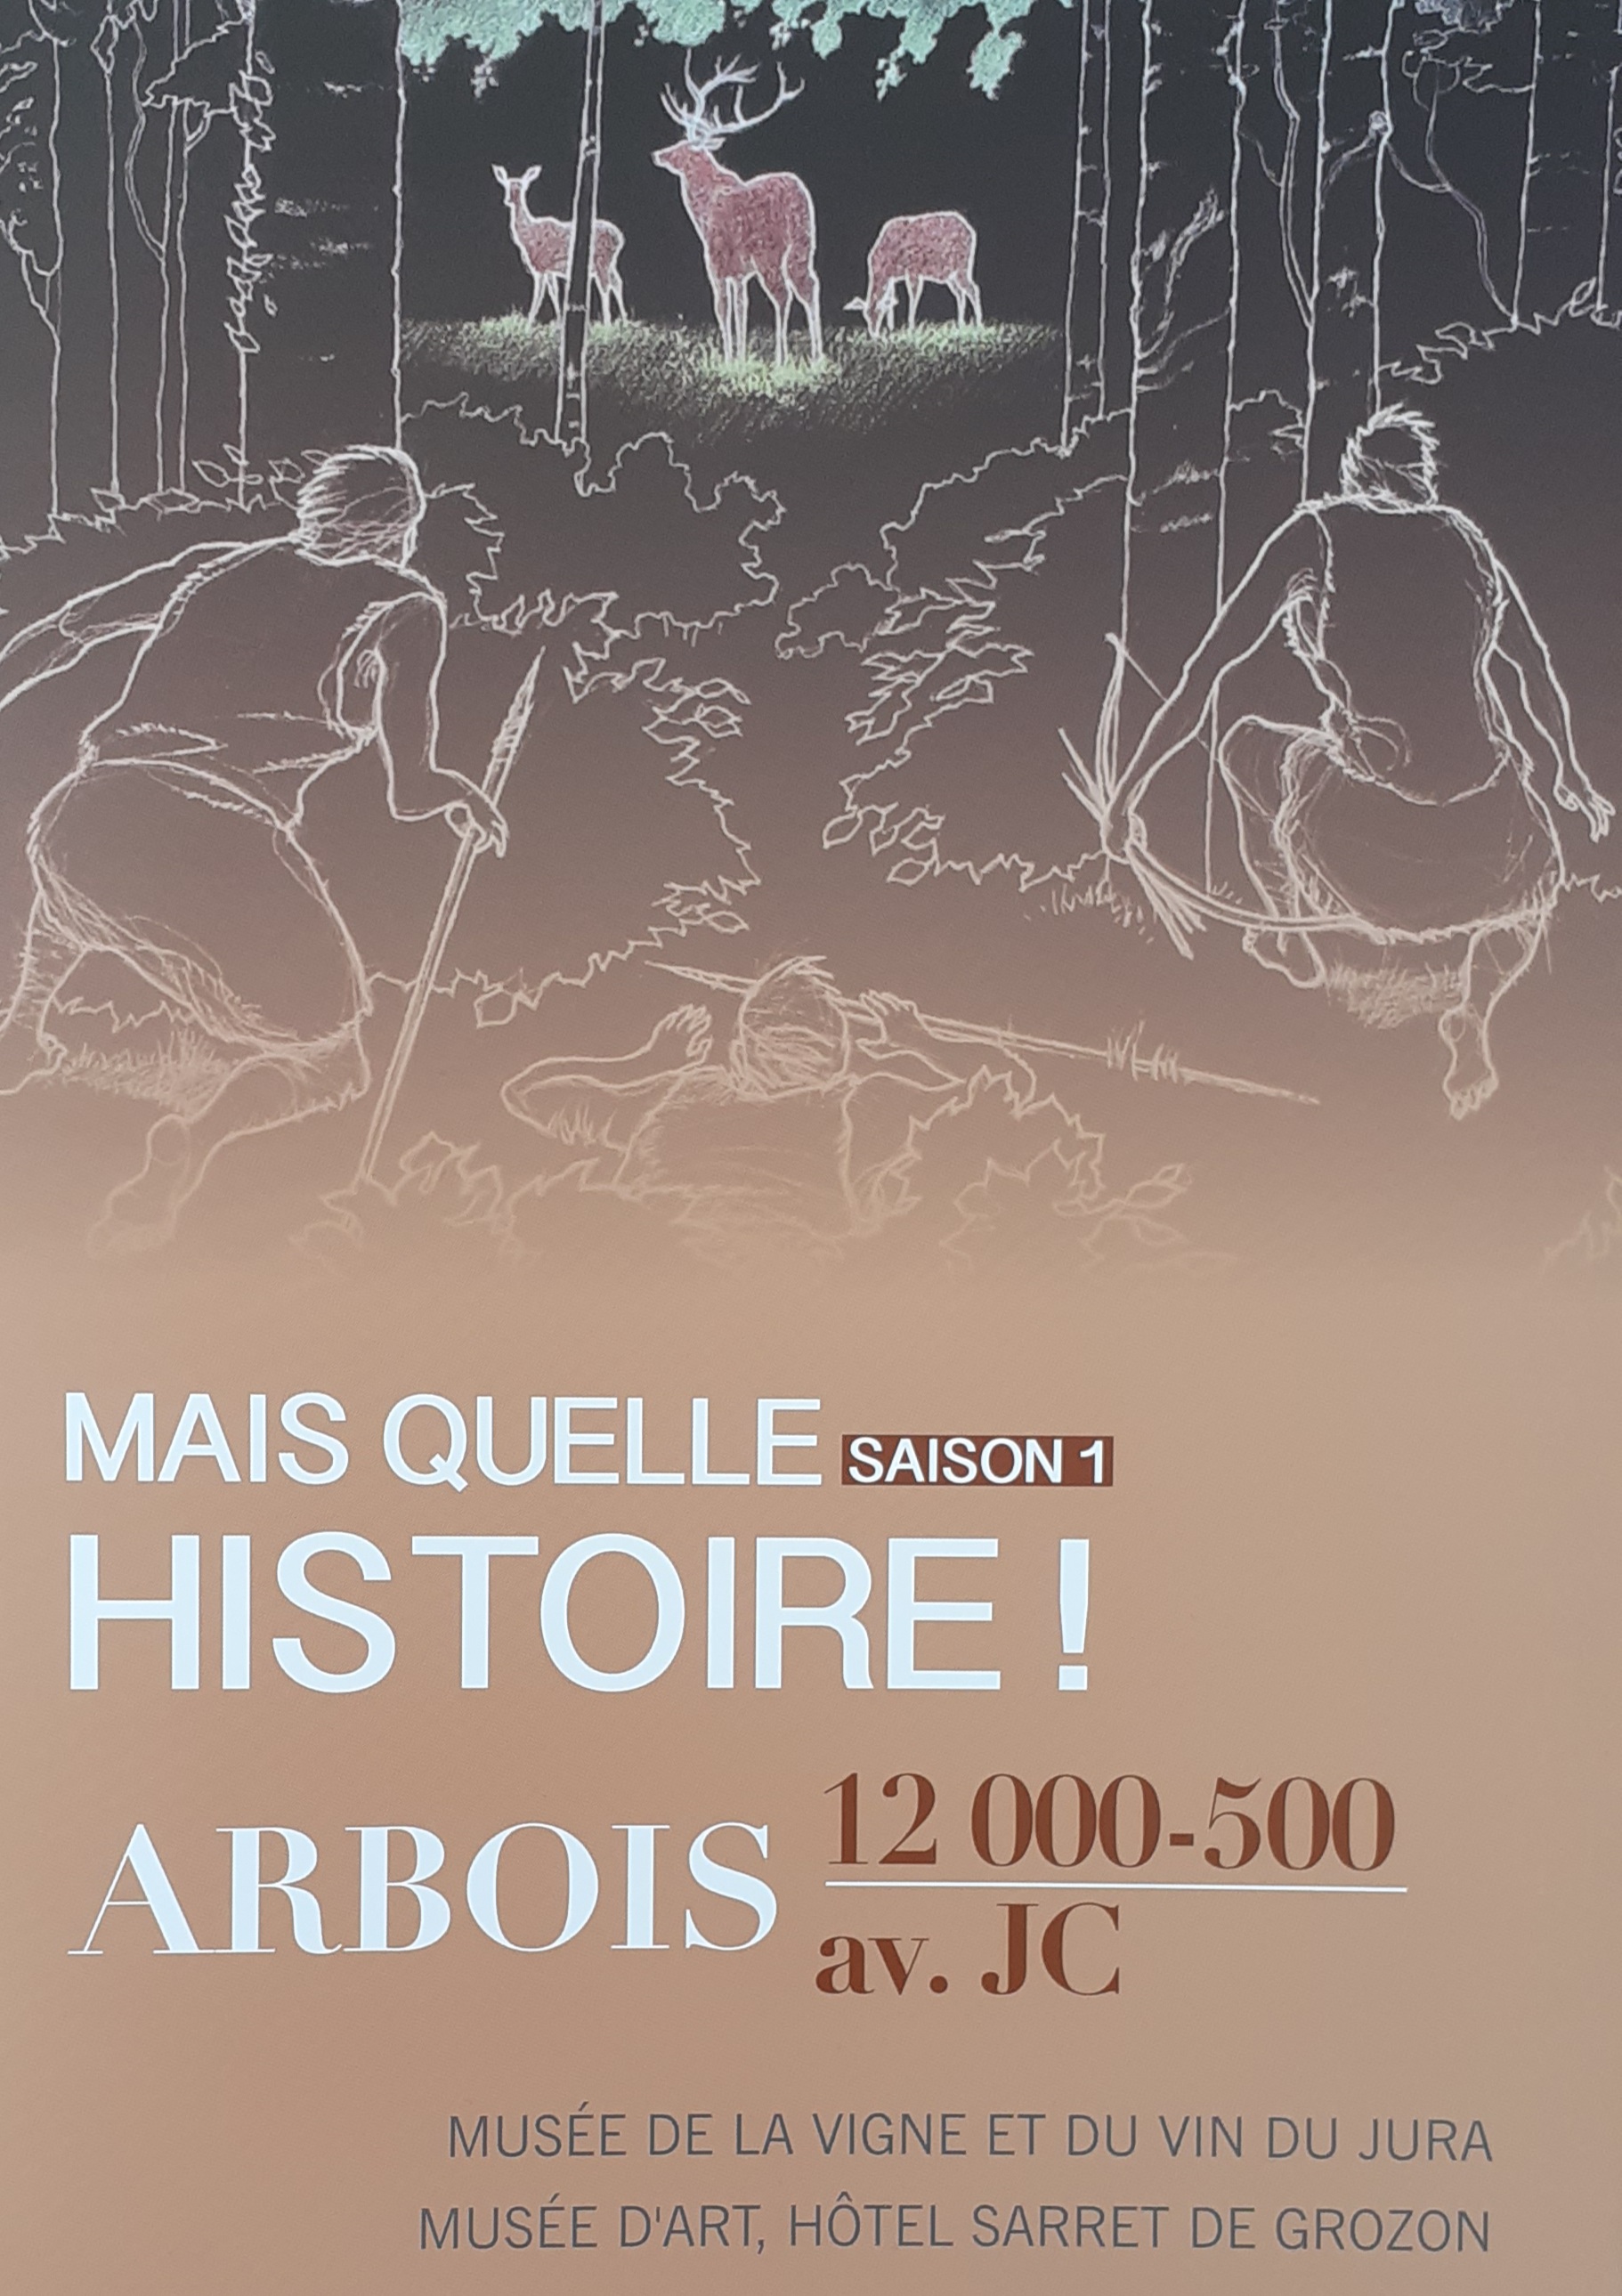 Mais quelle histoire ! Arbois, 12 000 - 500 av. J.-C. (Saison 1), 2021, 44 p.